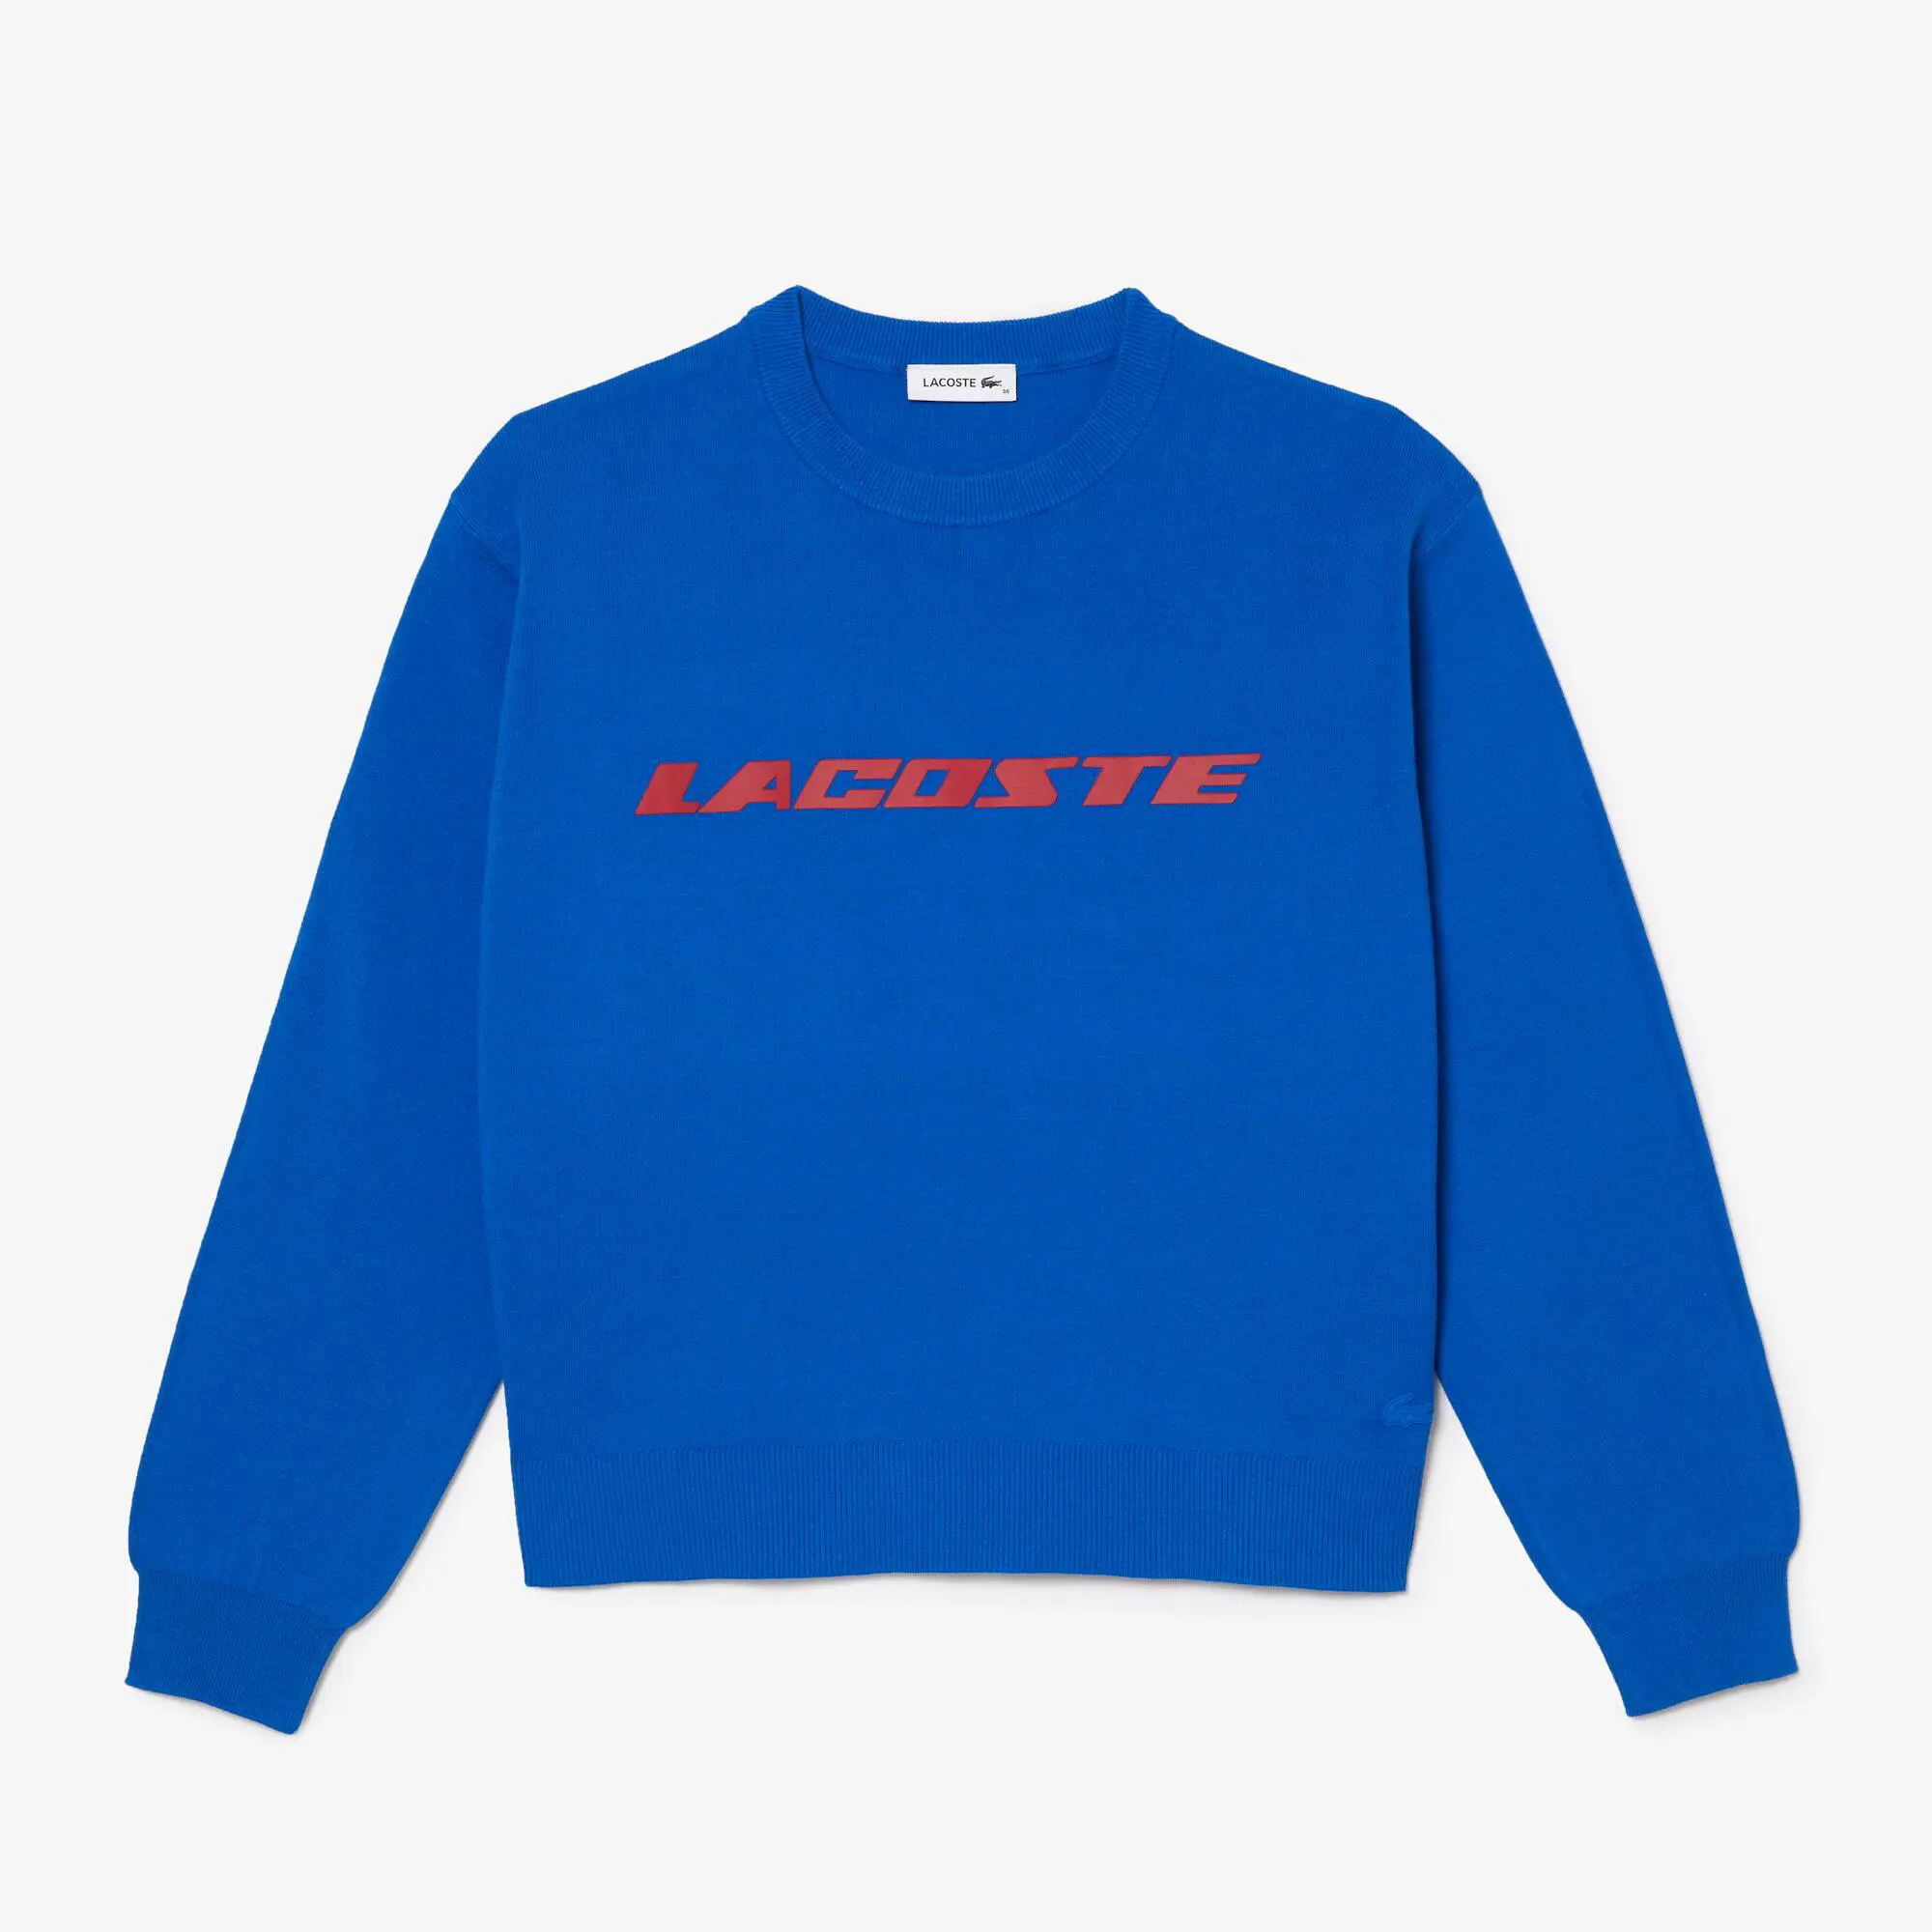 Lacoste Women's Lacoste Contrast Branded Sweater. 1